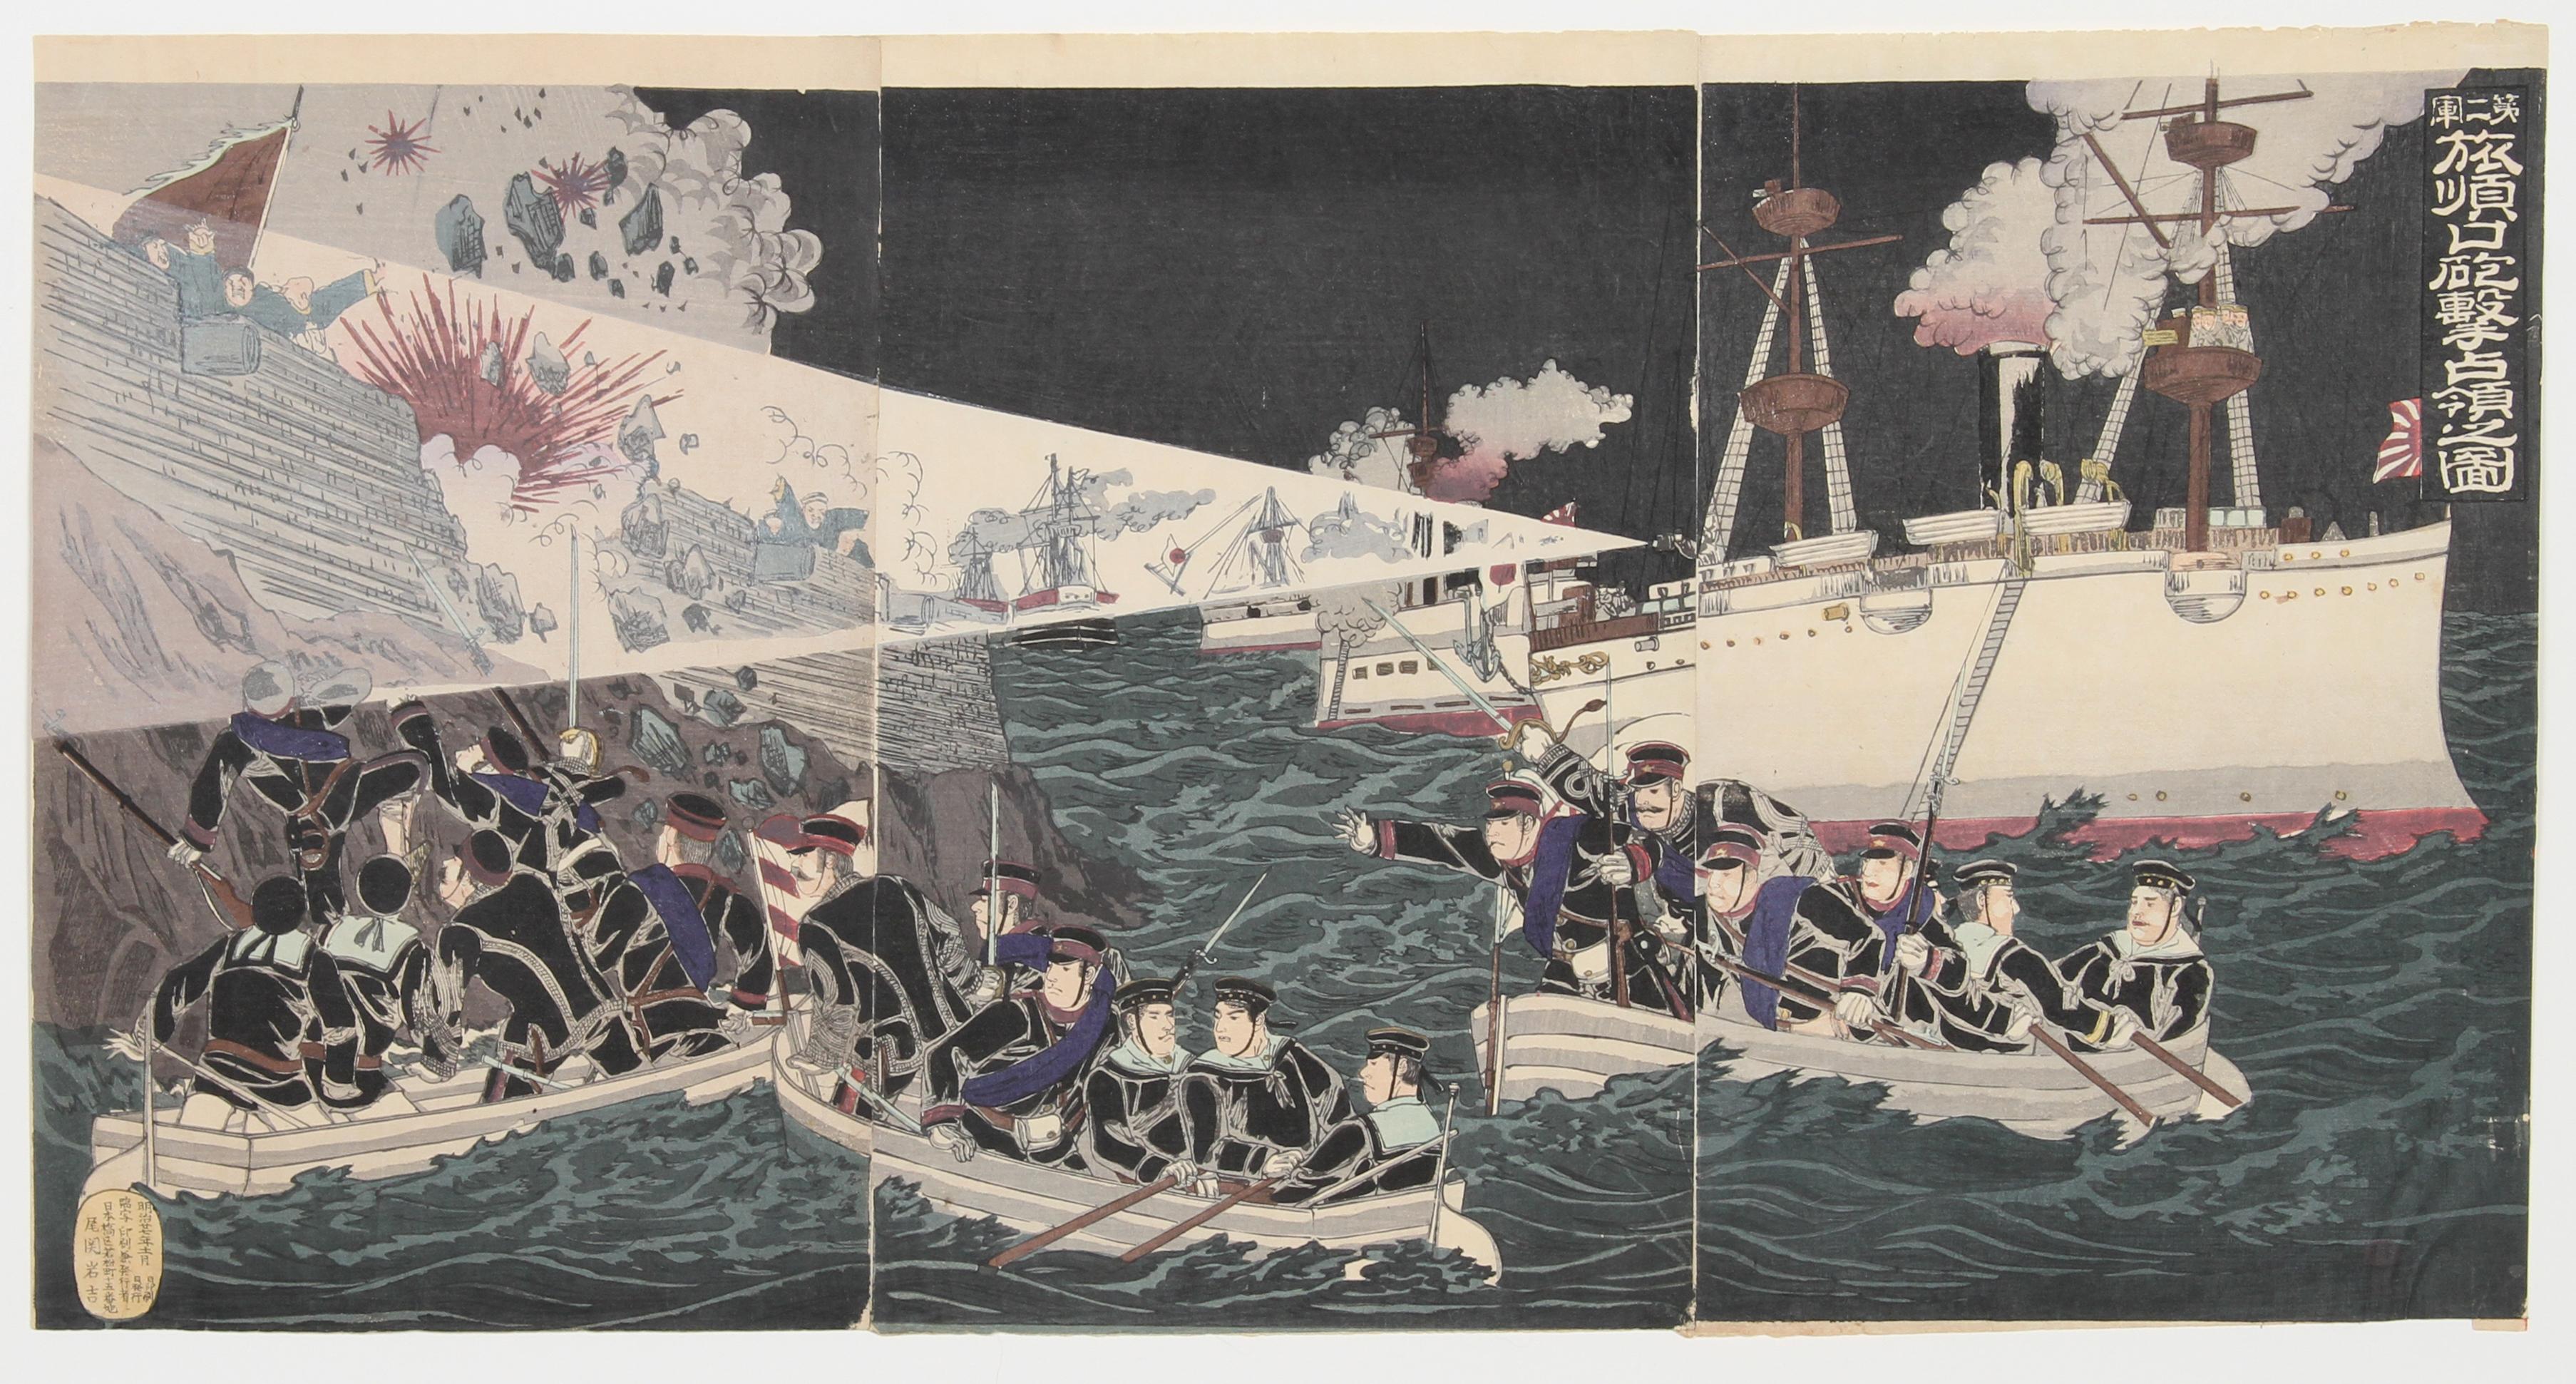 Artiste : Watanabe Nobukazu, japonais (1872 - 1944)
Titre : La deuxième armée bombarde et occupe Port Arthur
Année : 1894 
Médium : Triptyque en bois
Taille : 14,5 in. x 28 in. (36,83 cm x 71,12 cm)
